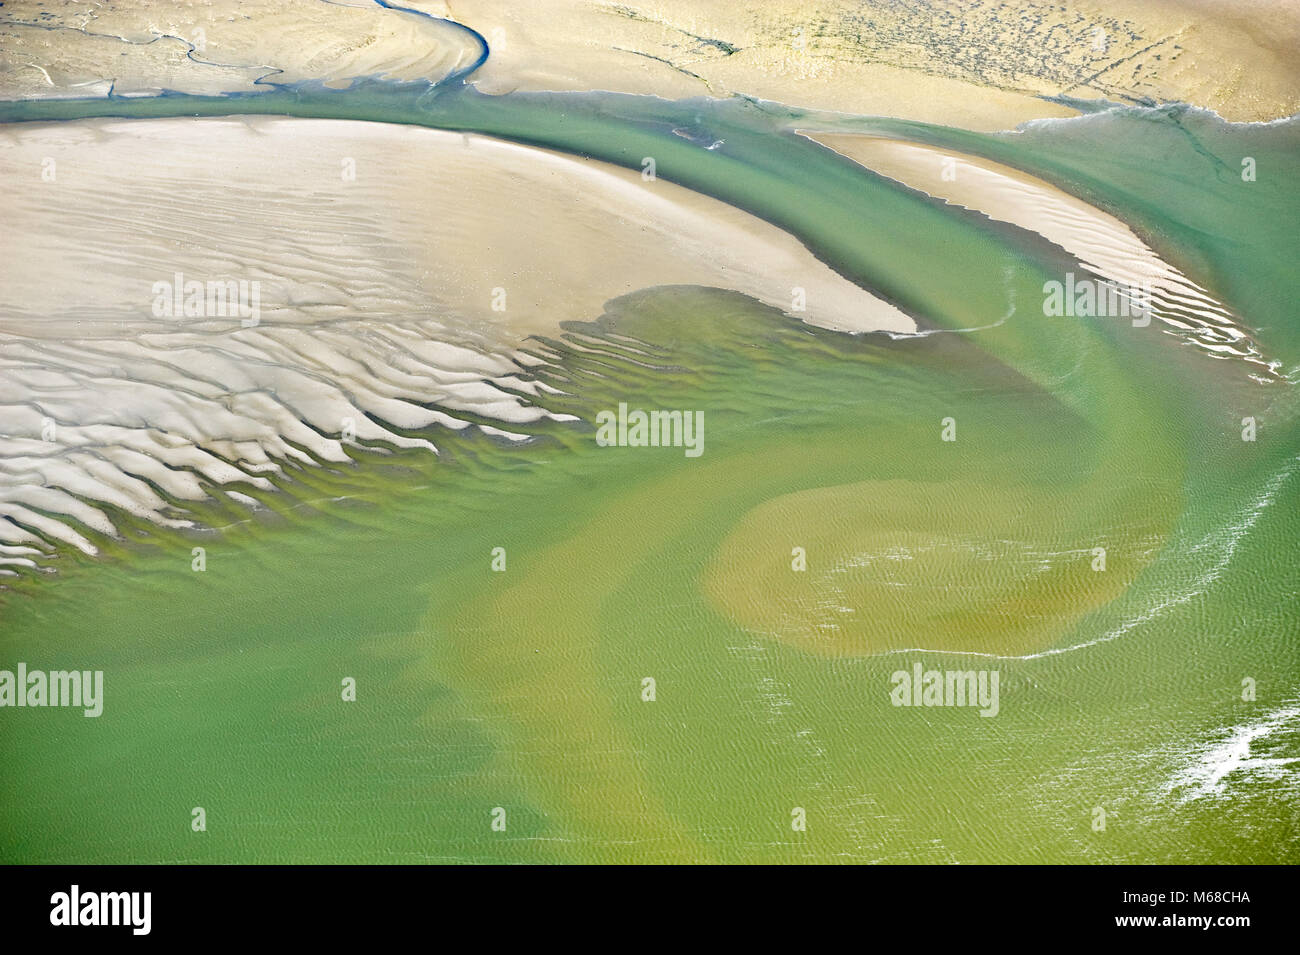 Belle forme in questo riassunto immagine aerea di Baie de L'Authie-Somme Foto Stock